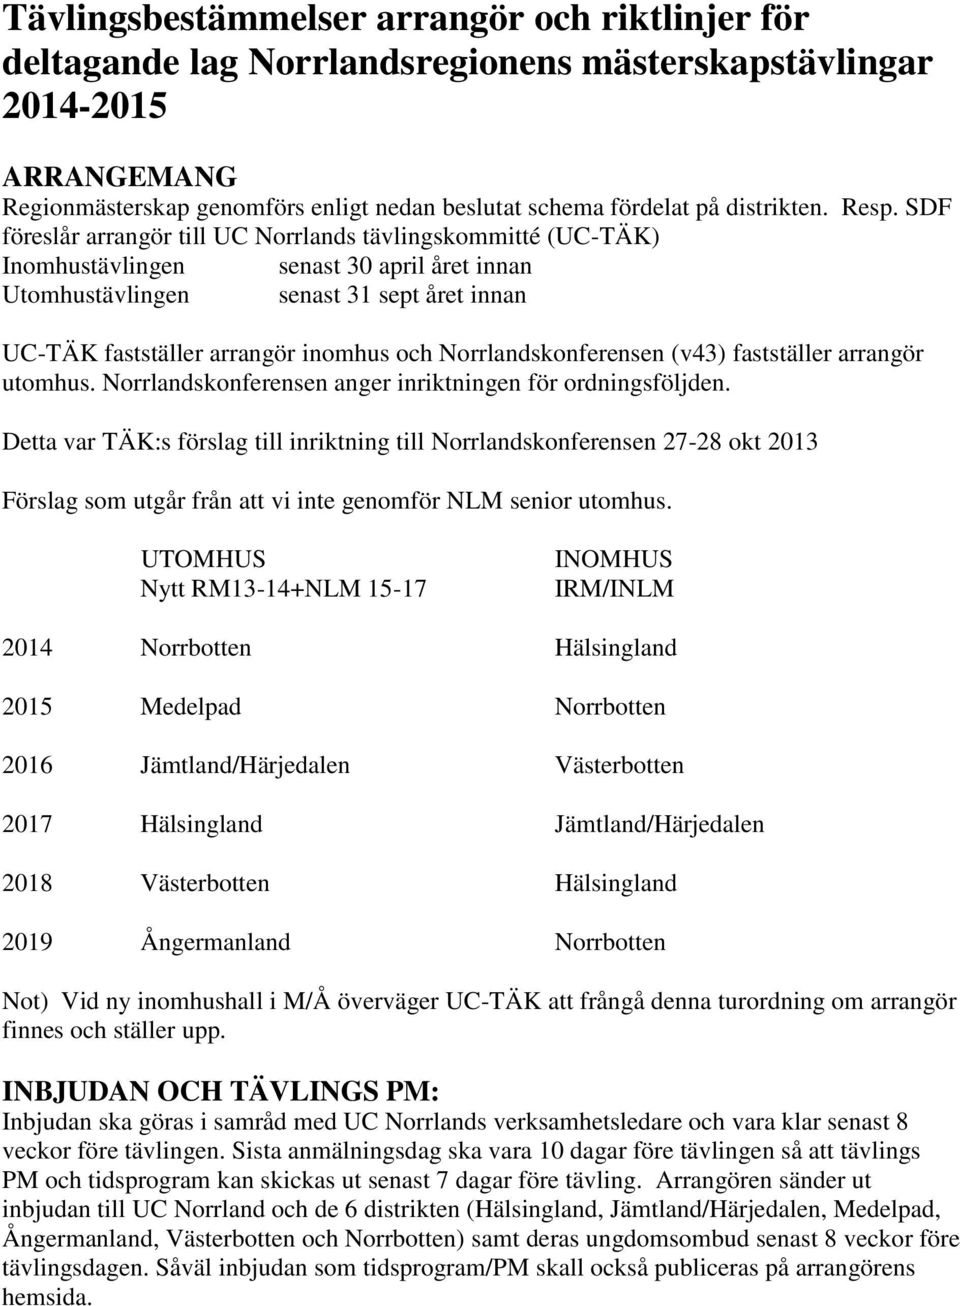 SDF föreslår arrangör till UC Norrlands tävlingskommitté (UC-TÄK) Inomhustävlingen senast 30 april året innan Utomhustävlingen senast 31 sept året innan UC-TÄK fastställer arrangör inomhus och